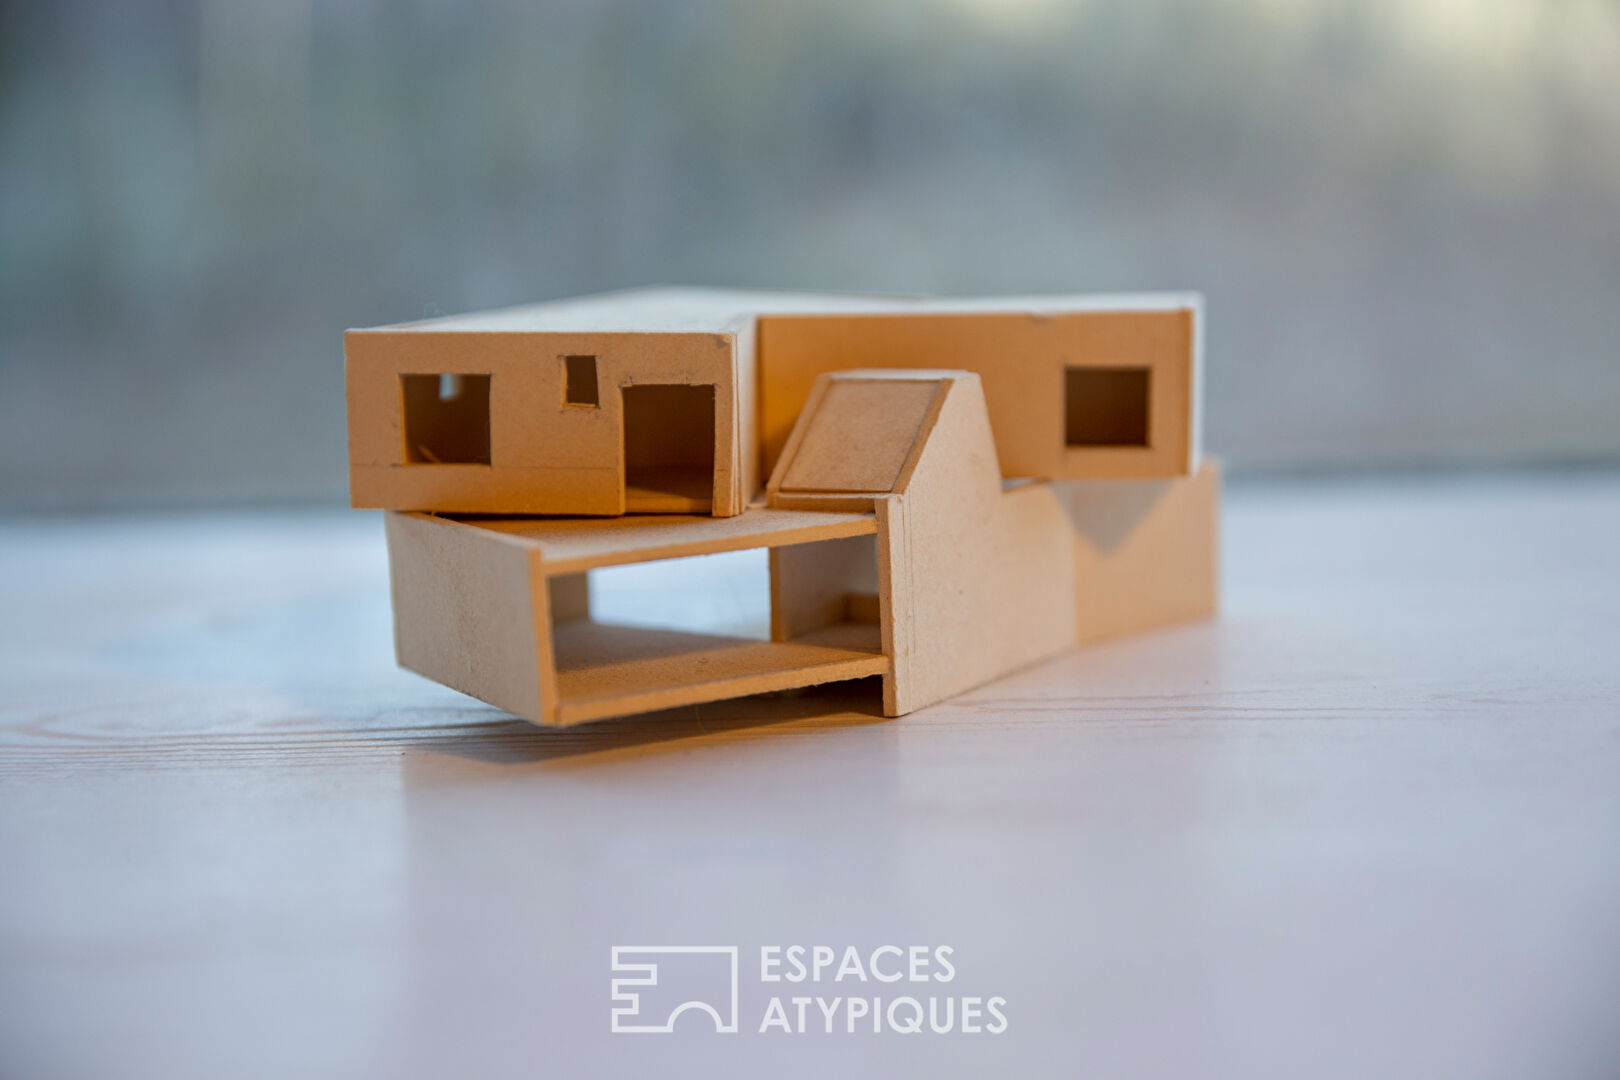 Eco-responsible architect-designed house